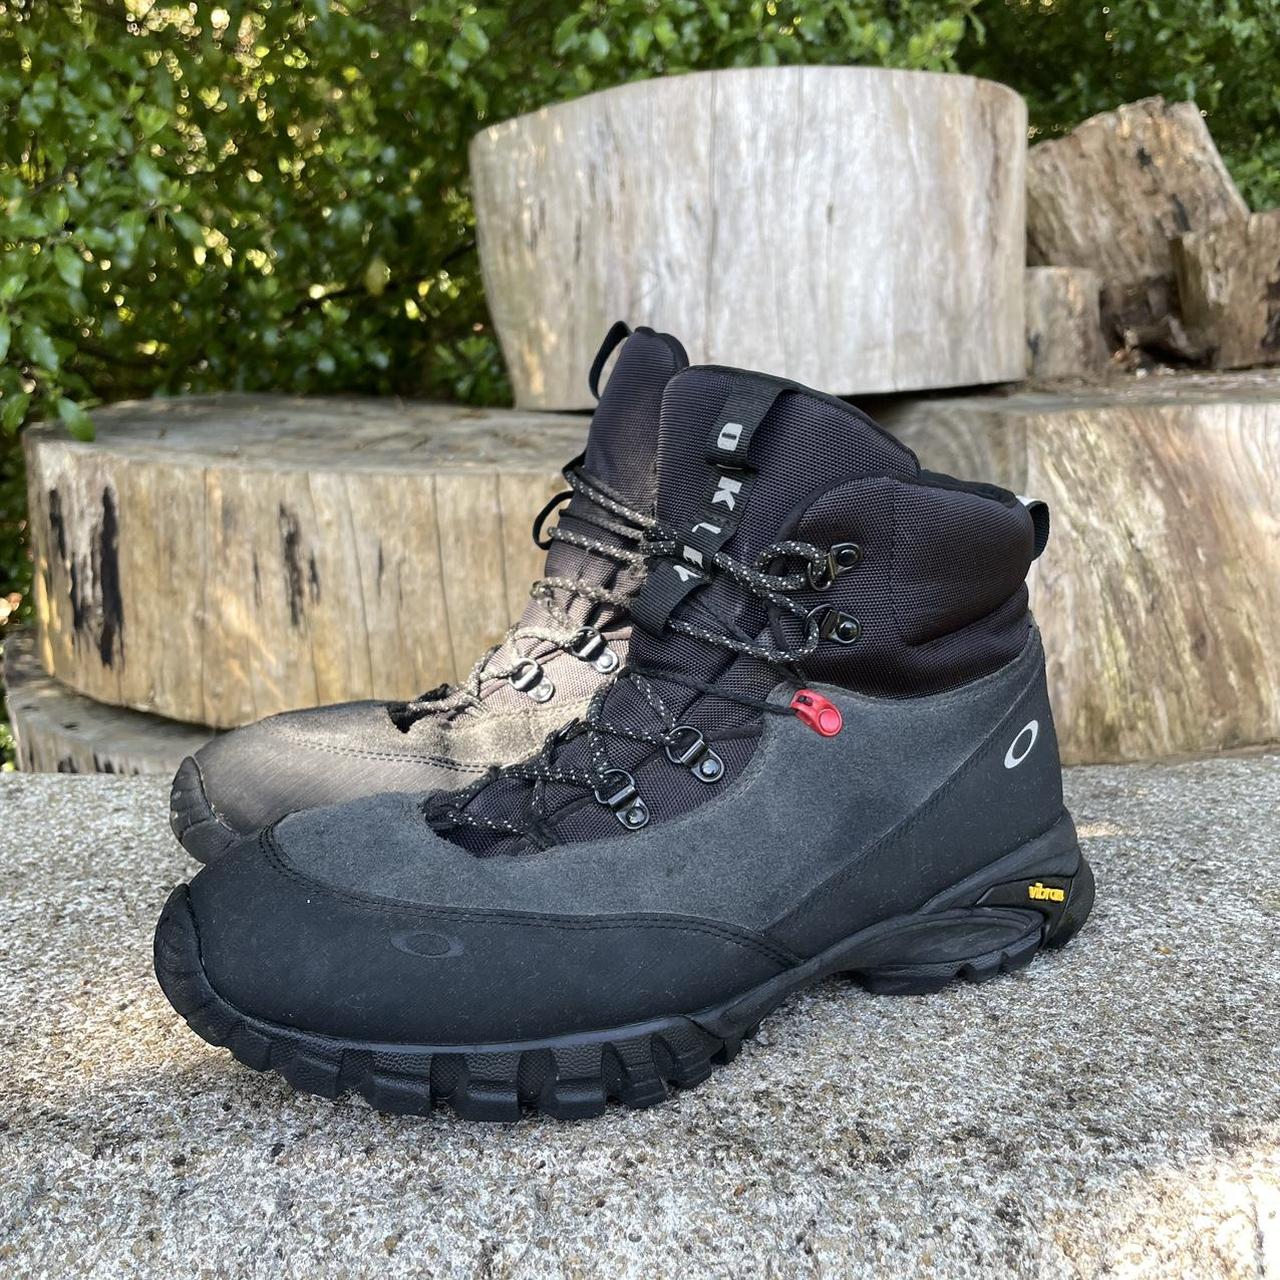 oakley vertex vibram boot winter hiking insulated... - Depop